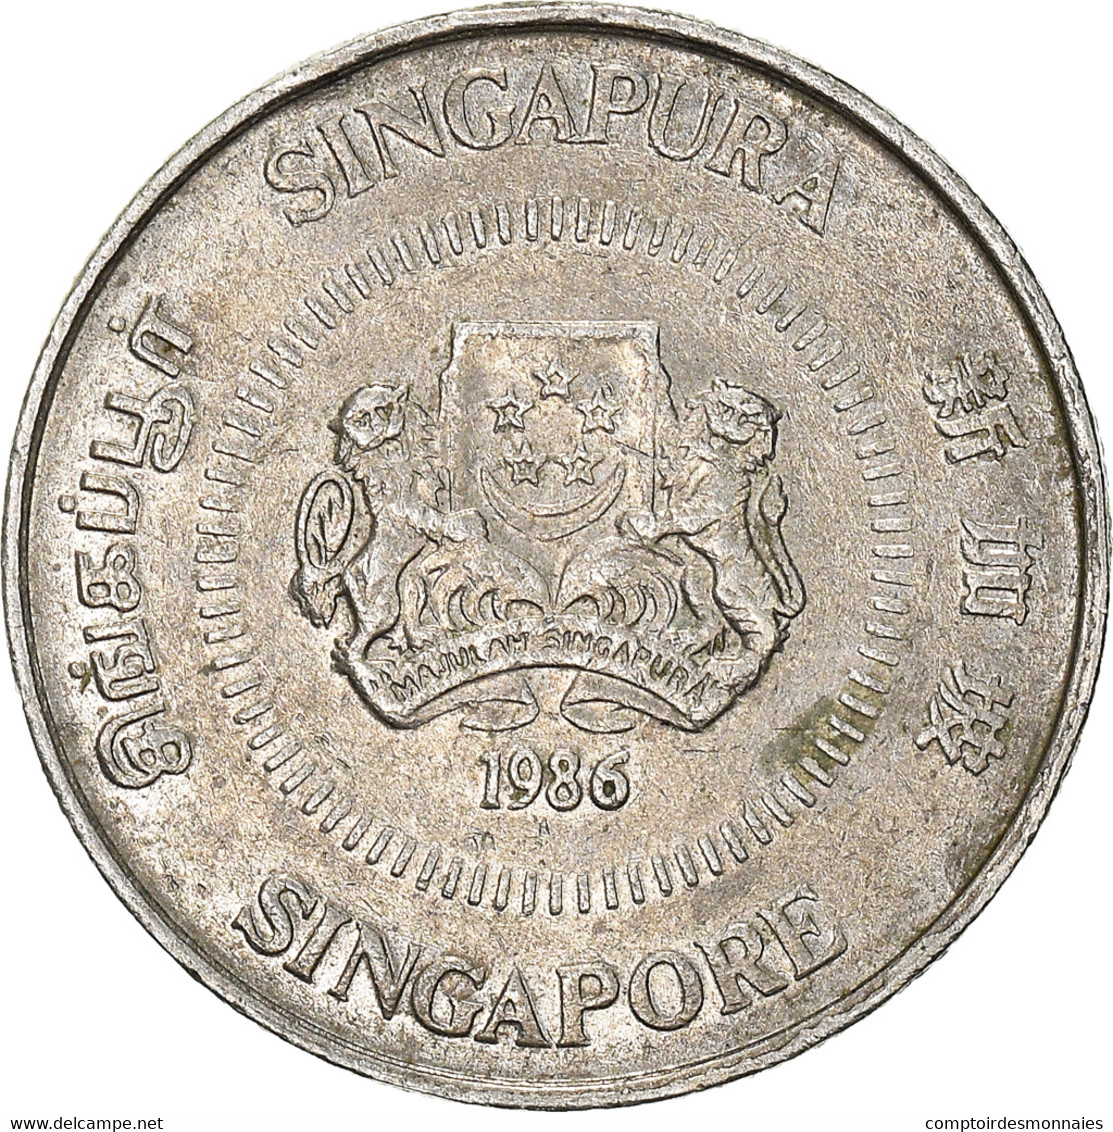 Monnaie, Singapour, 10 Cents, 1986 - Singapour